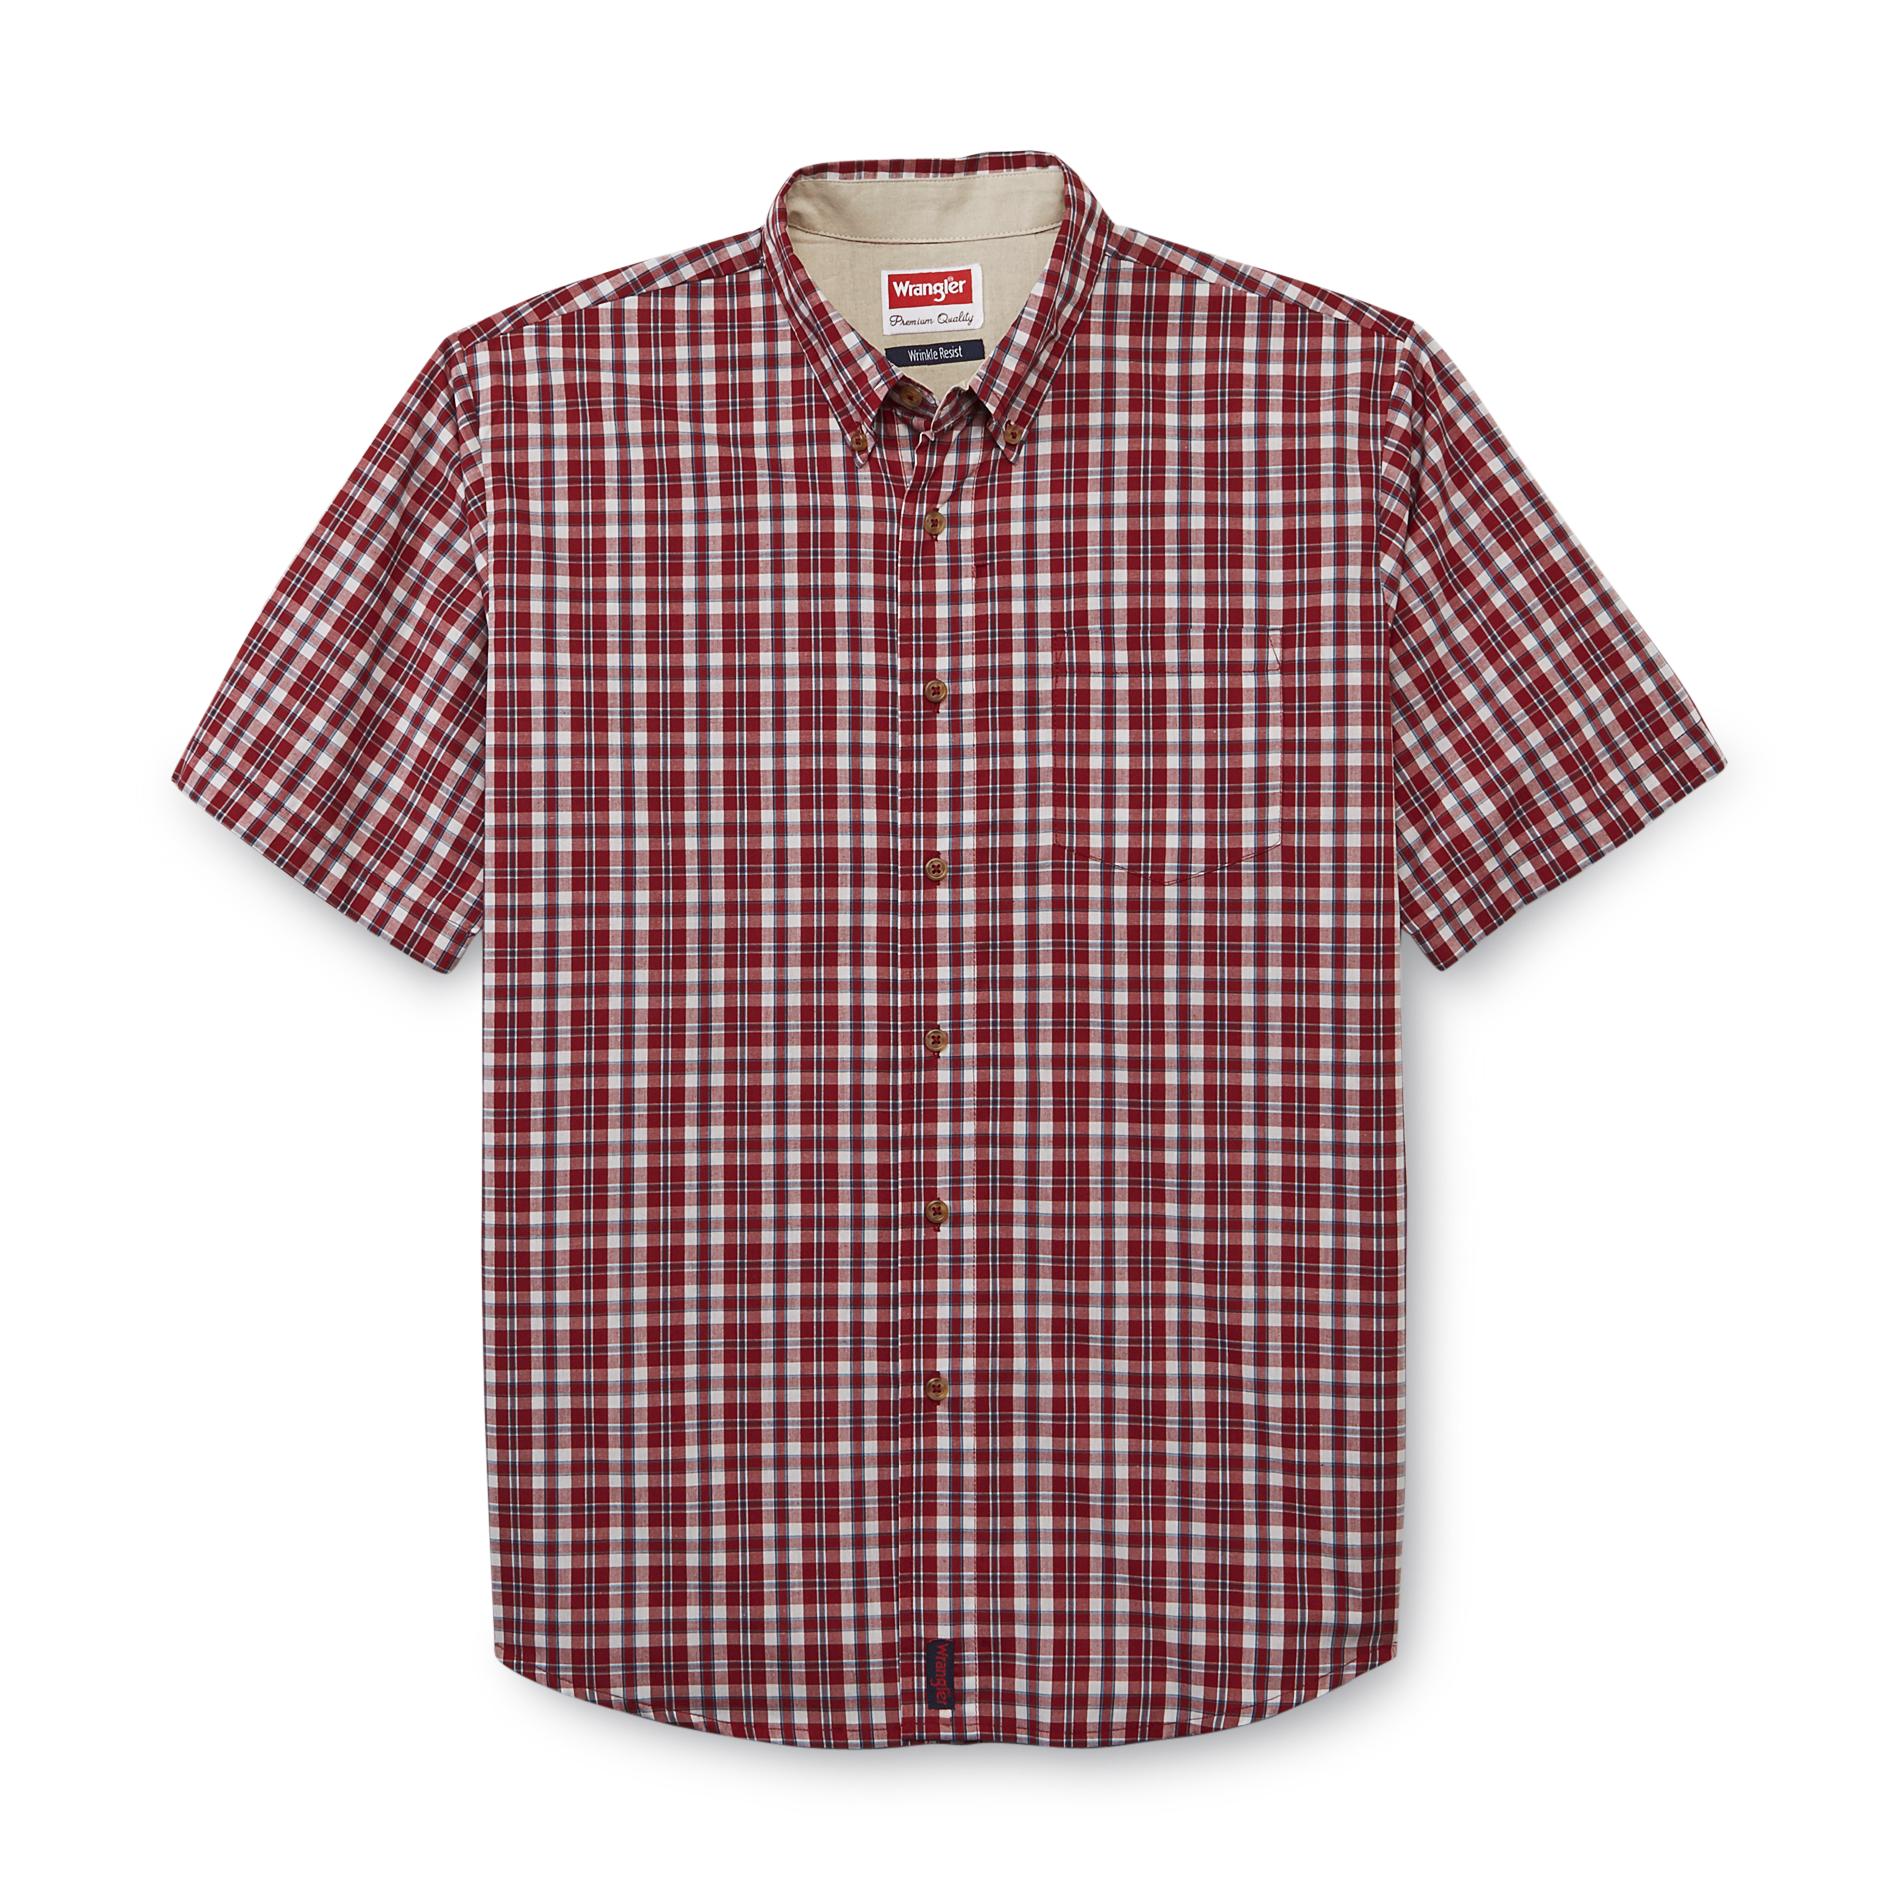 Wrangler Men's Short-Sleeve Shirt - Plaid